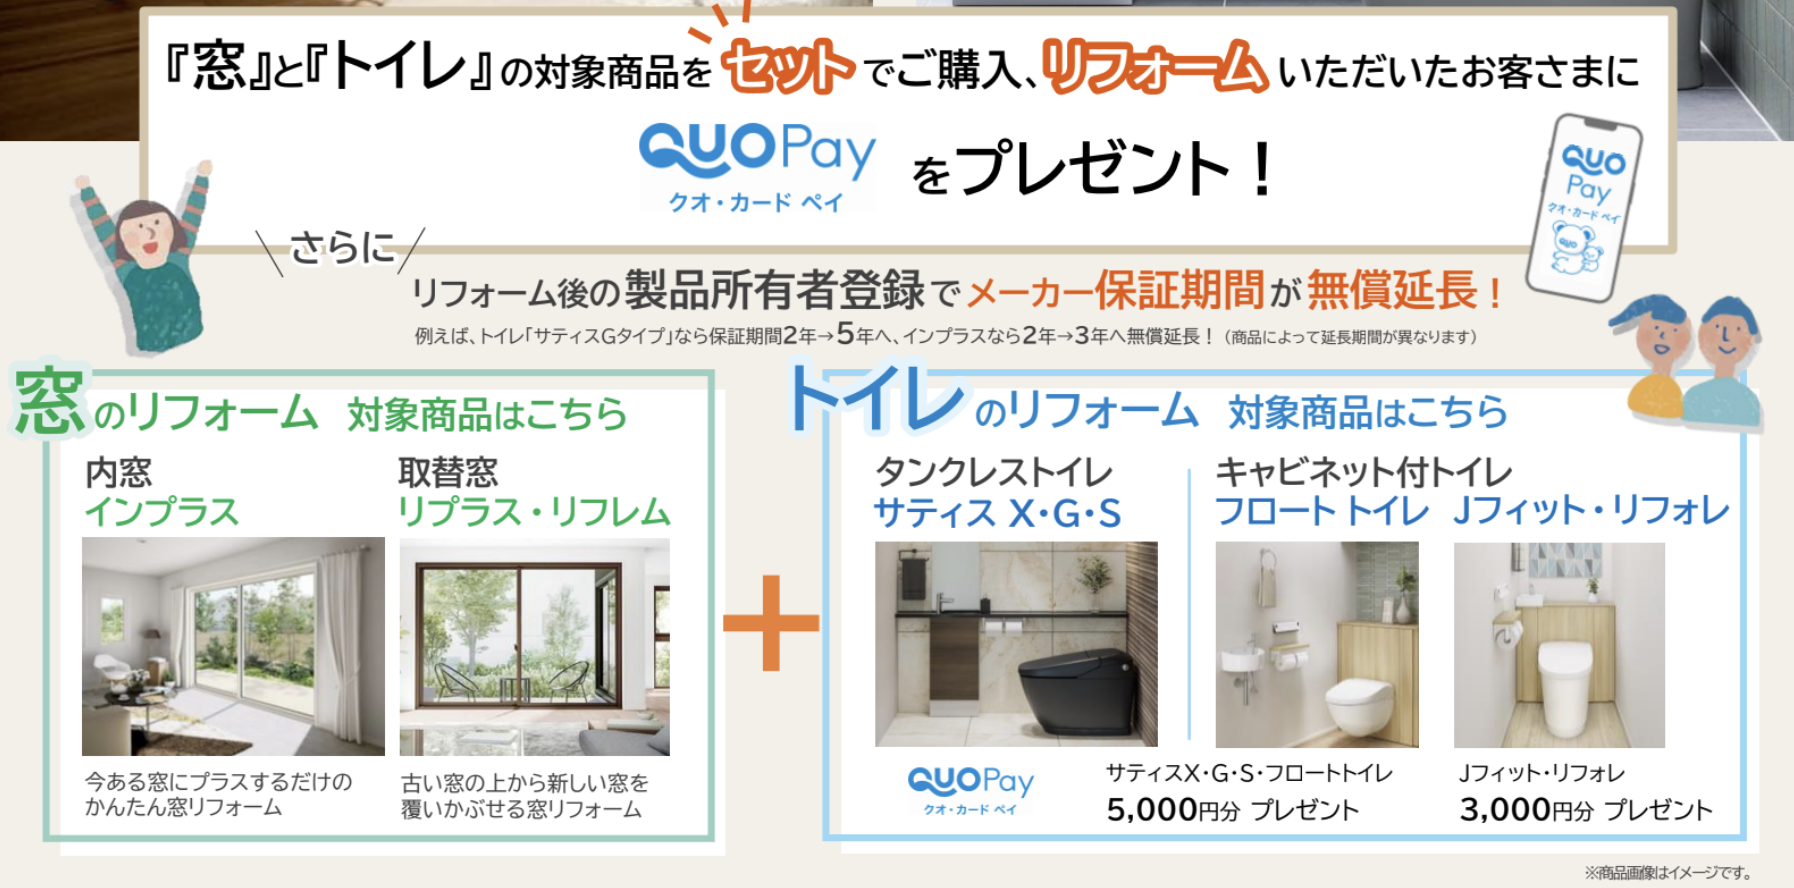 窓とトイレのリフォームセットキャンペーン ダルパ札幌のイベントキャンペーン 写真2